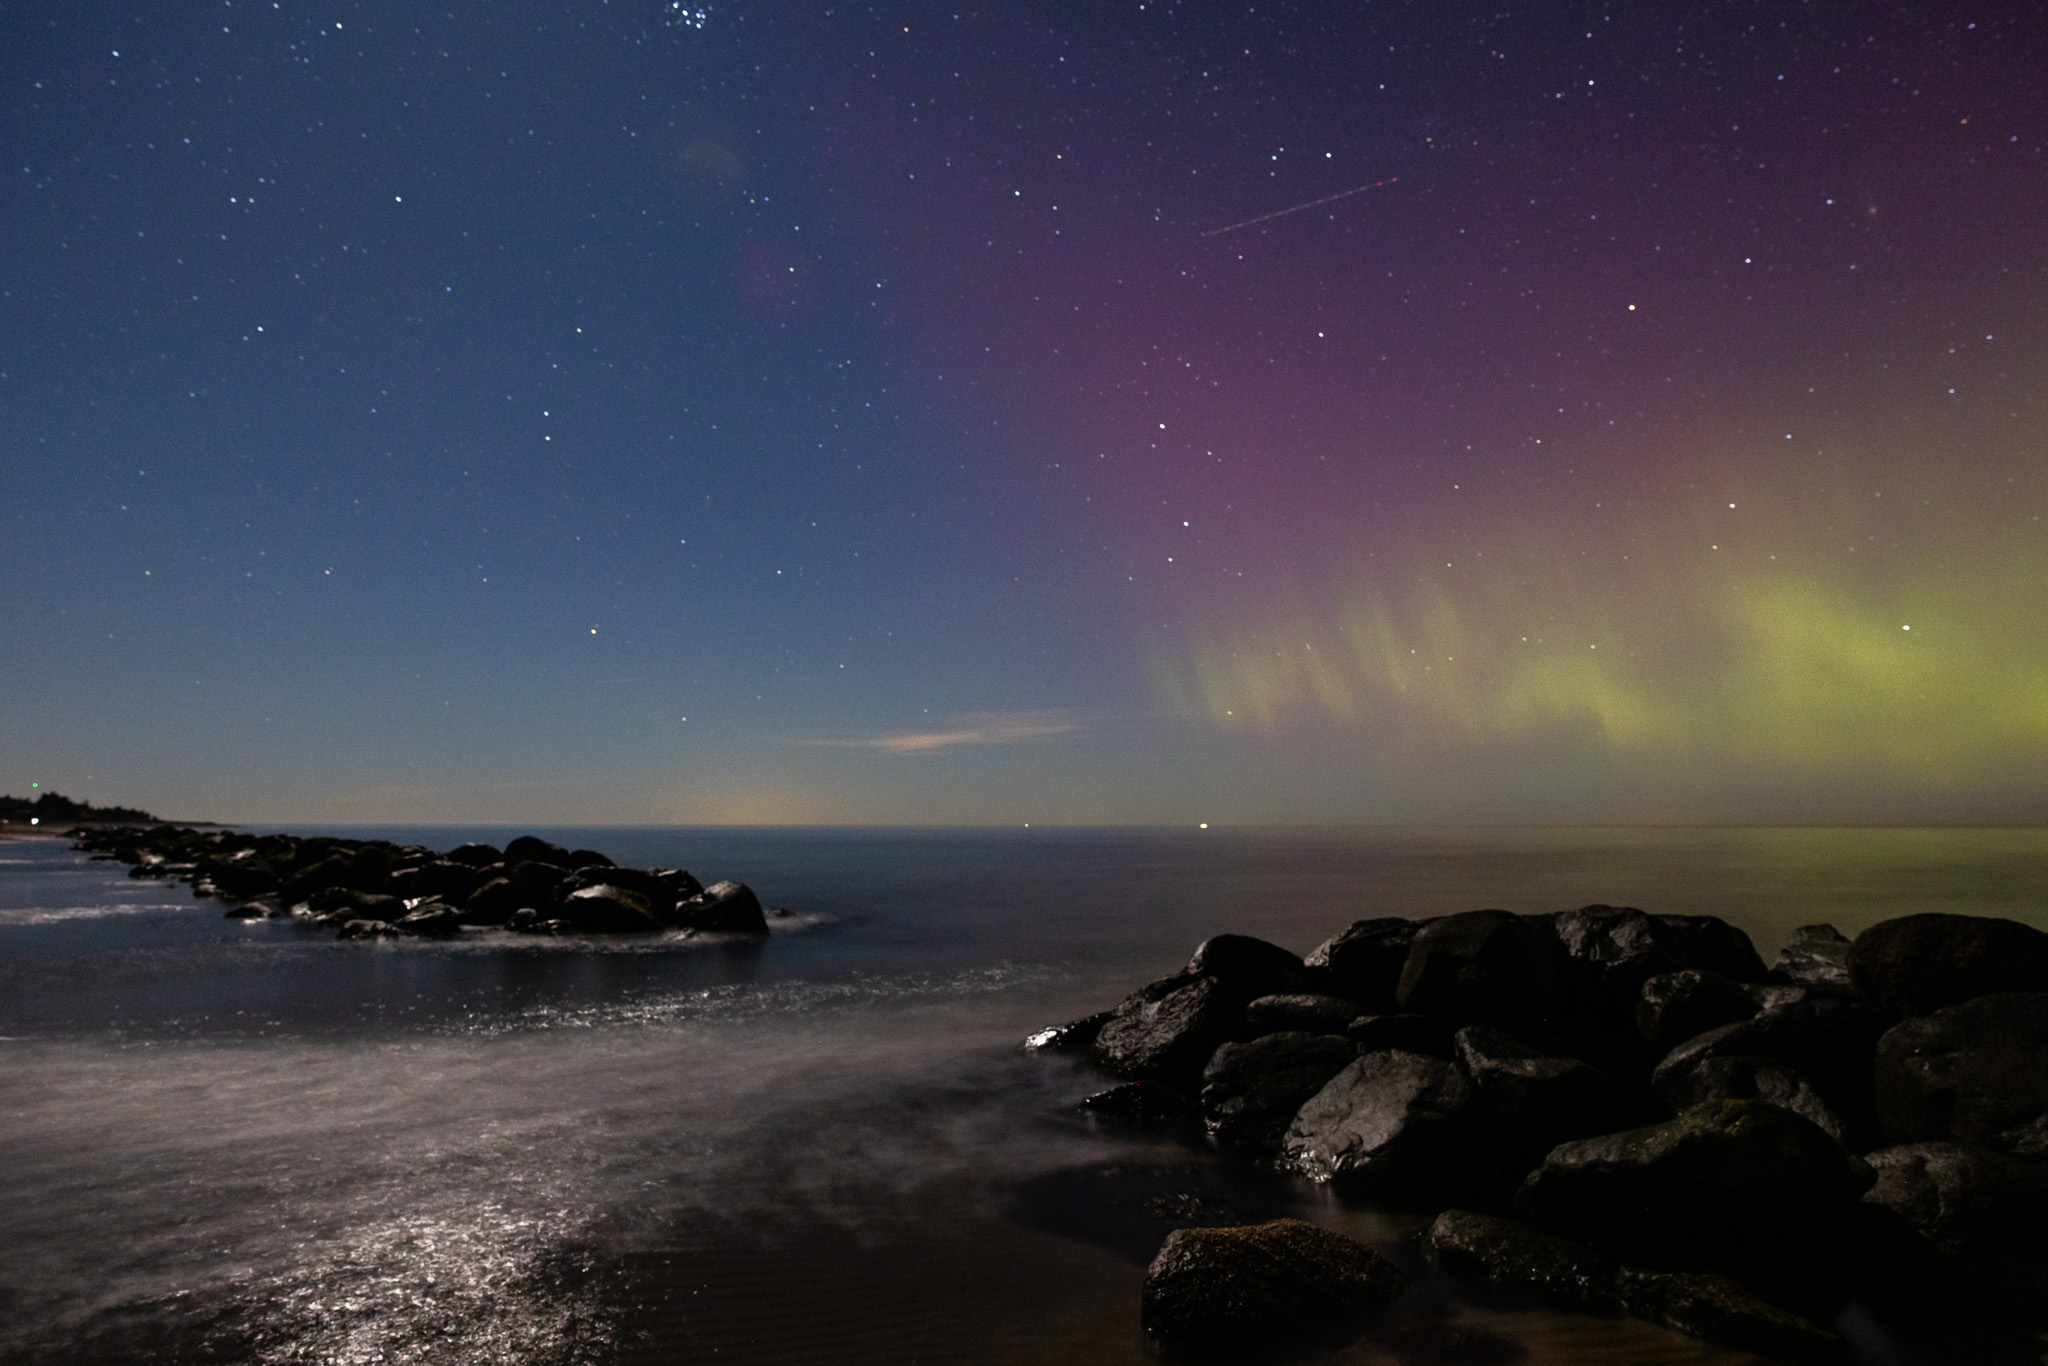 aurora-borealis-northern-lights-denmark-gilleleje-gegenwind-astro-photography-4